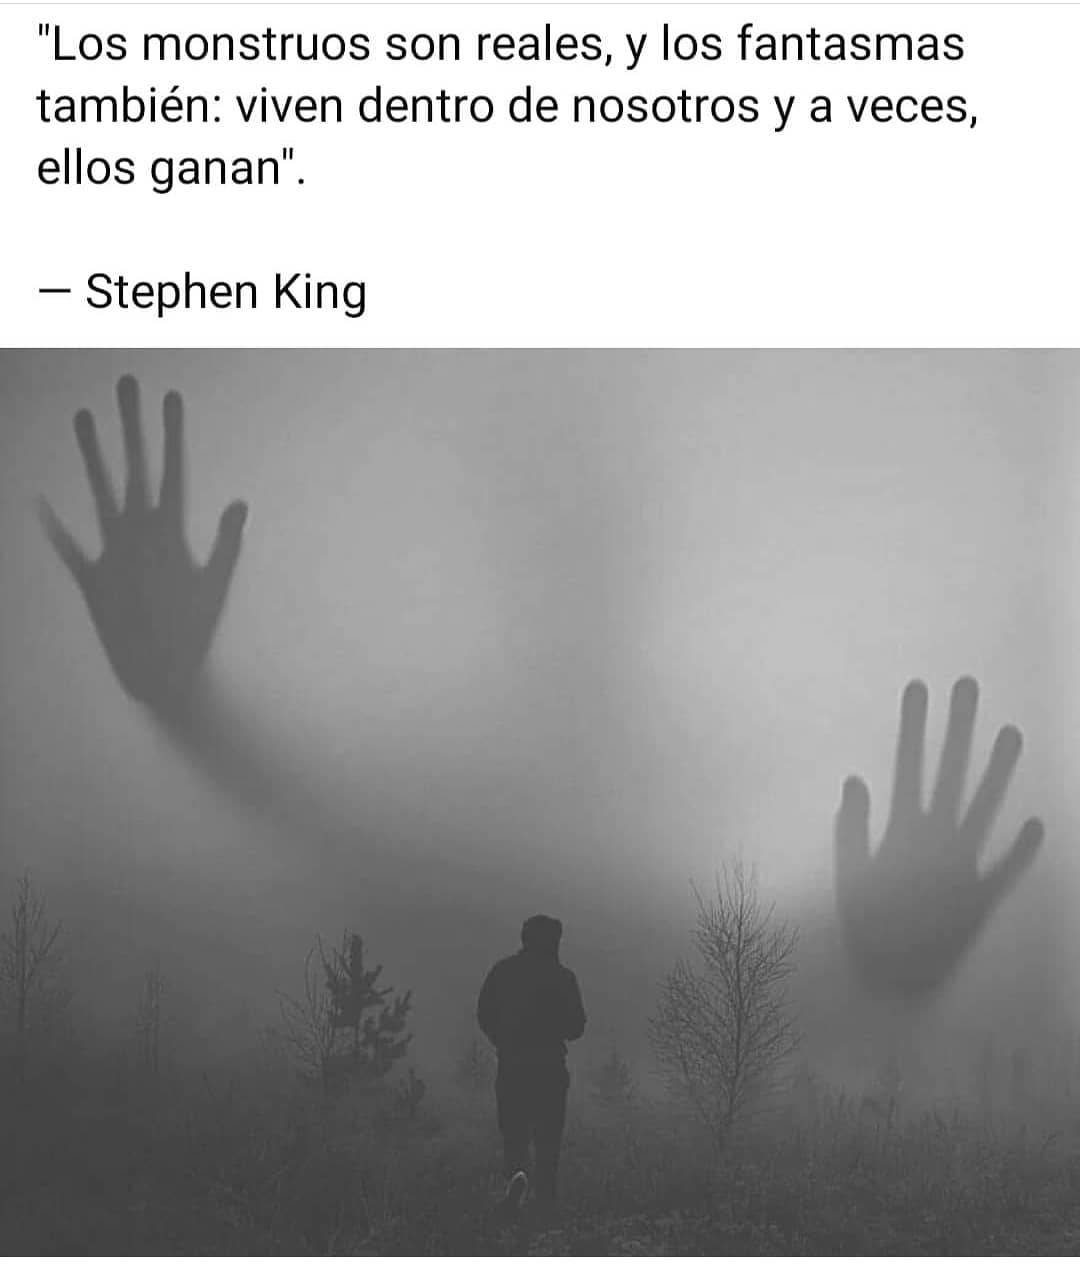 Los monstruos son reales, y los fantasmas también: Viven dentro de nosotros y a veces, ellos ganan. Stephen King.